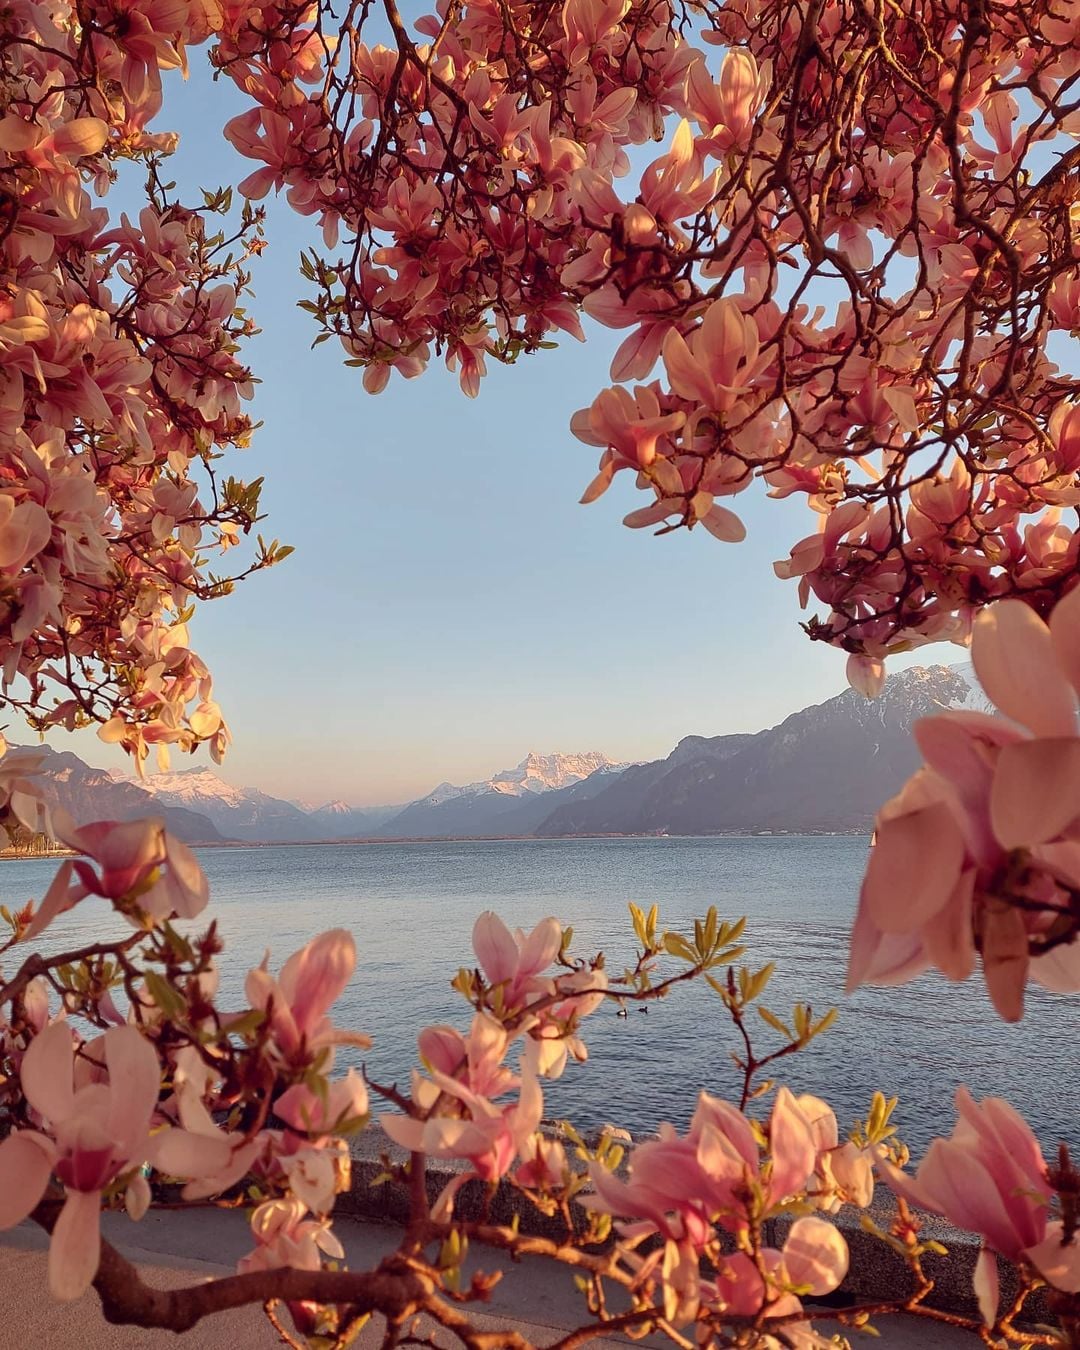 Dhjetë imazhe të bukura të Zvicrës në pranverë - Albinfo